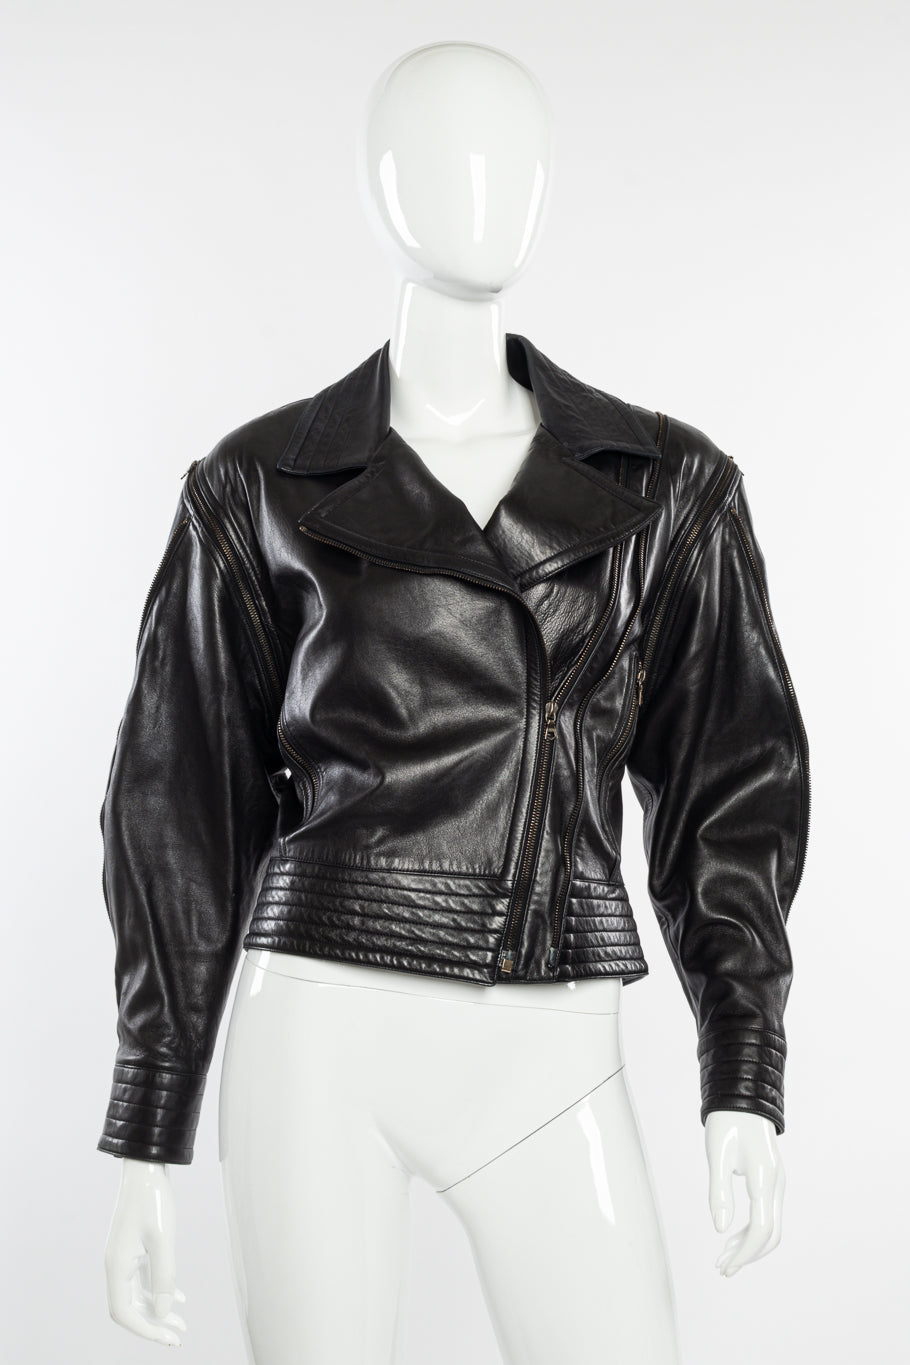 Vintage John Michael Leather Jacket